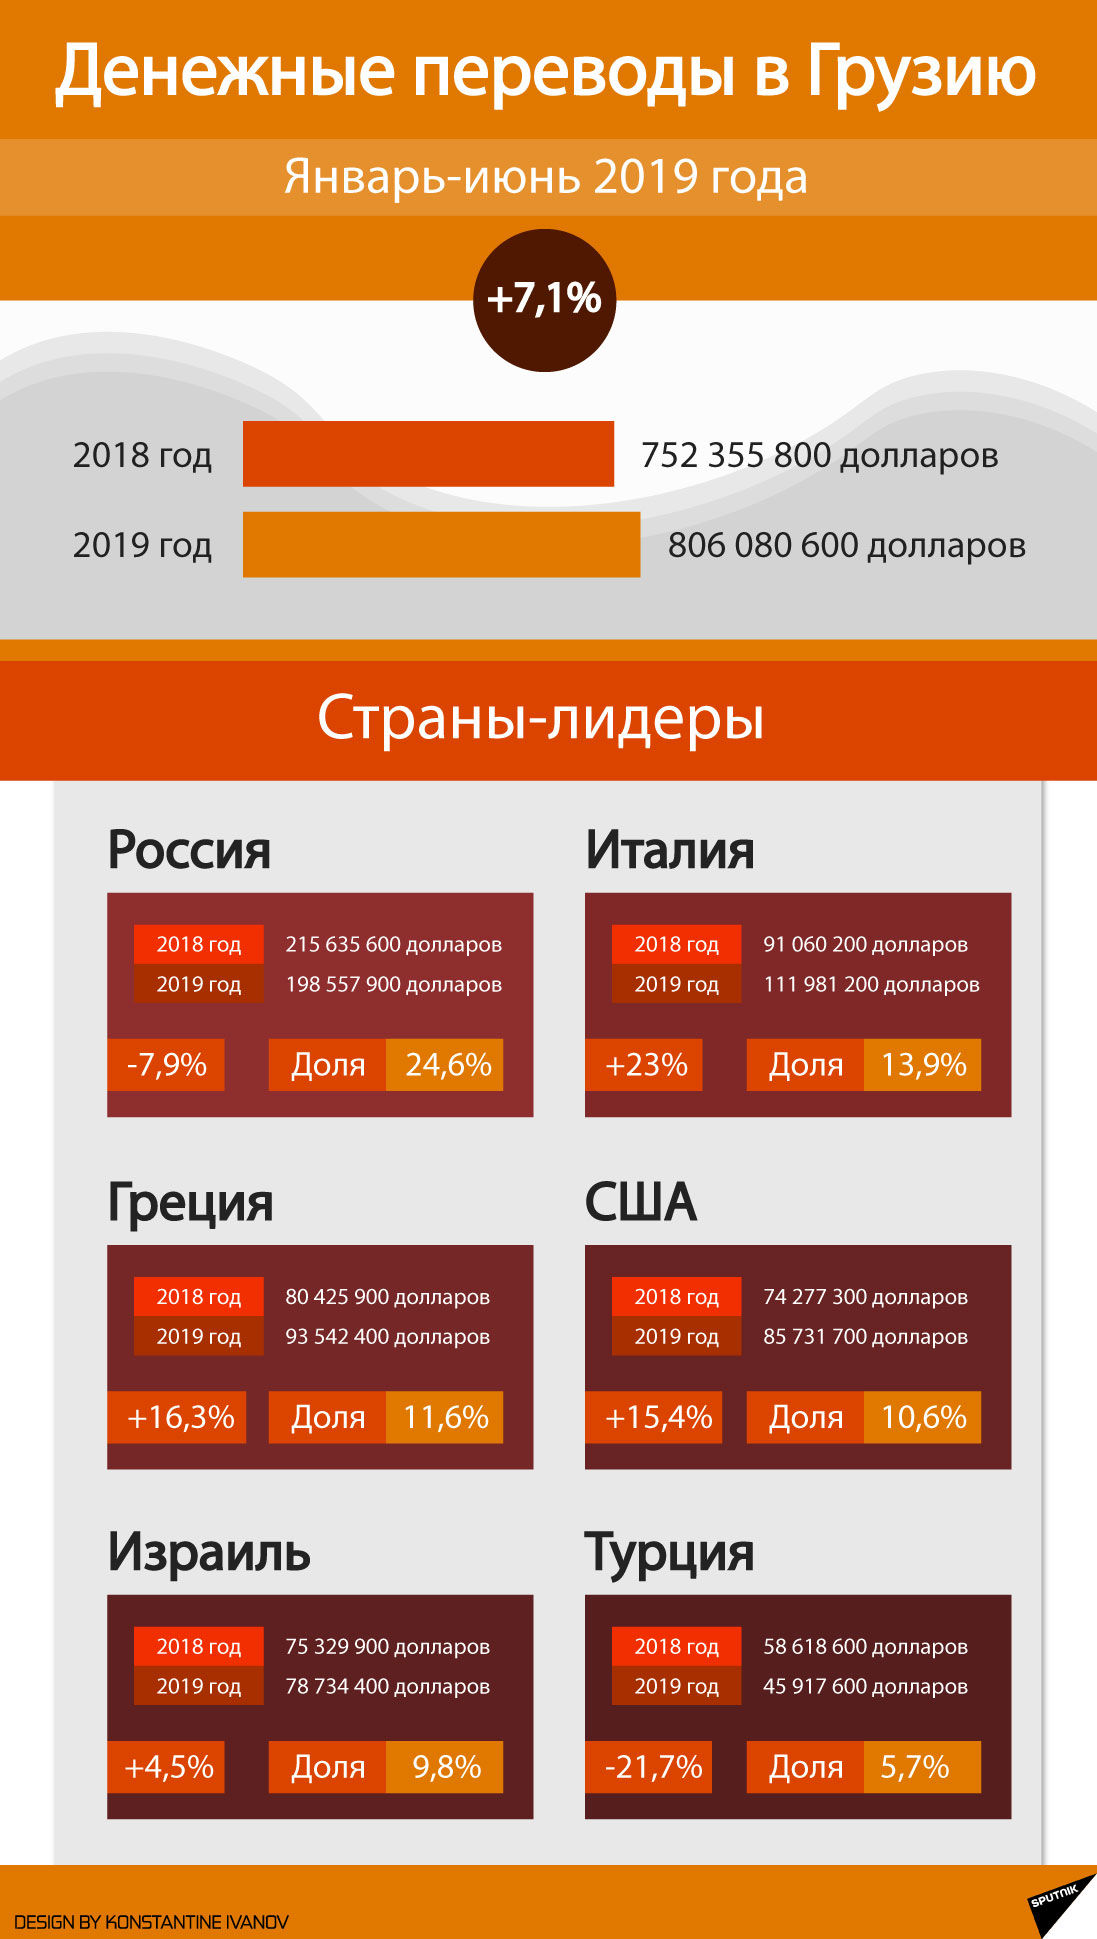 Денежные переводы в Грузию, январь-июнь 2019 года  - Sputnik Грузия